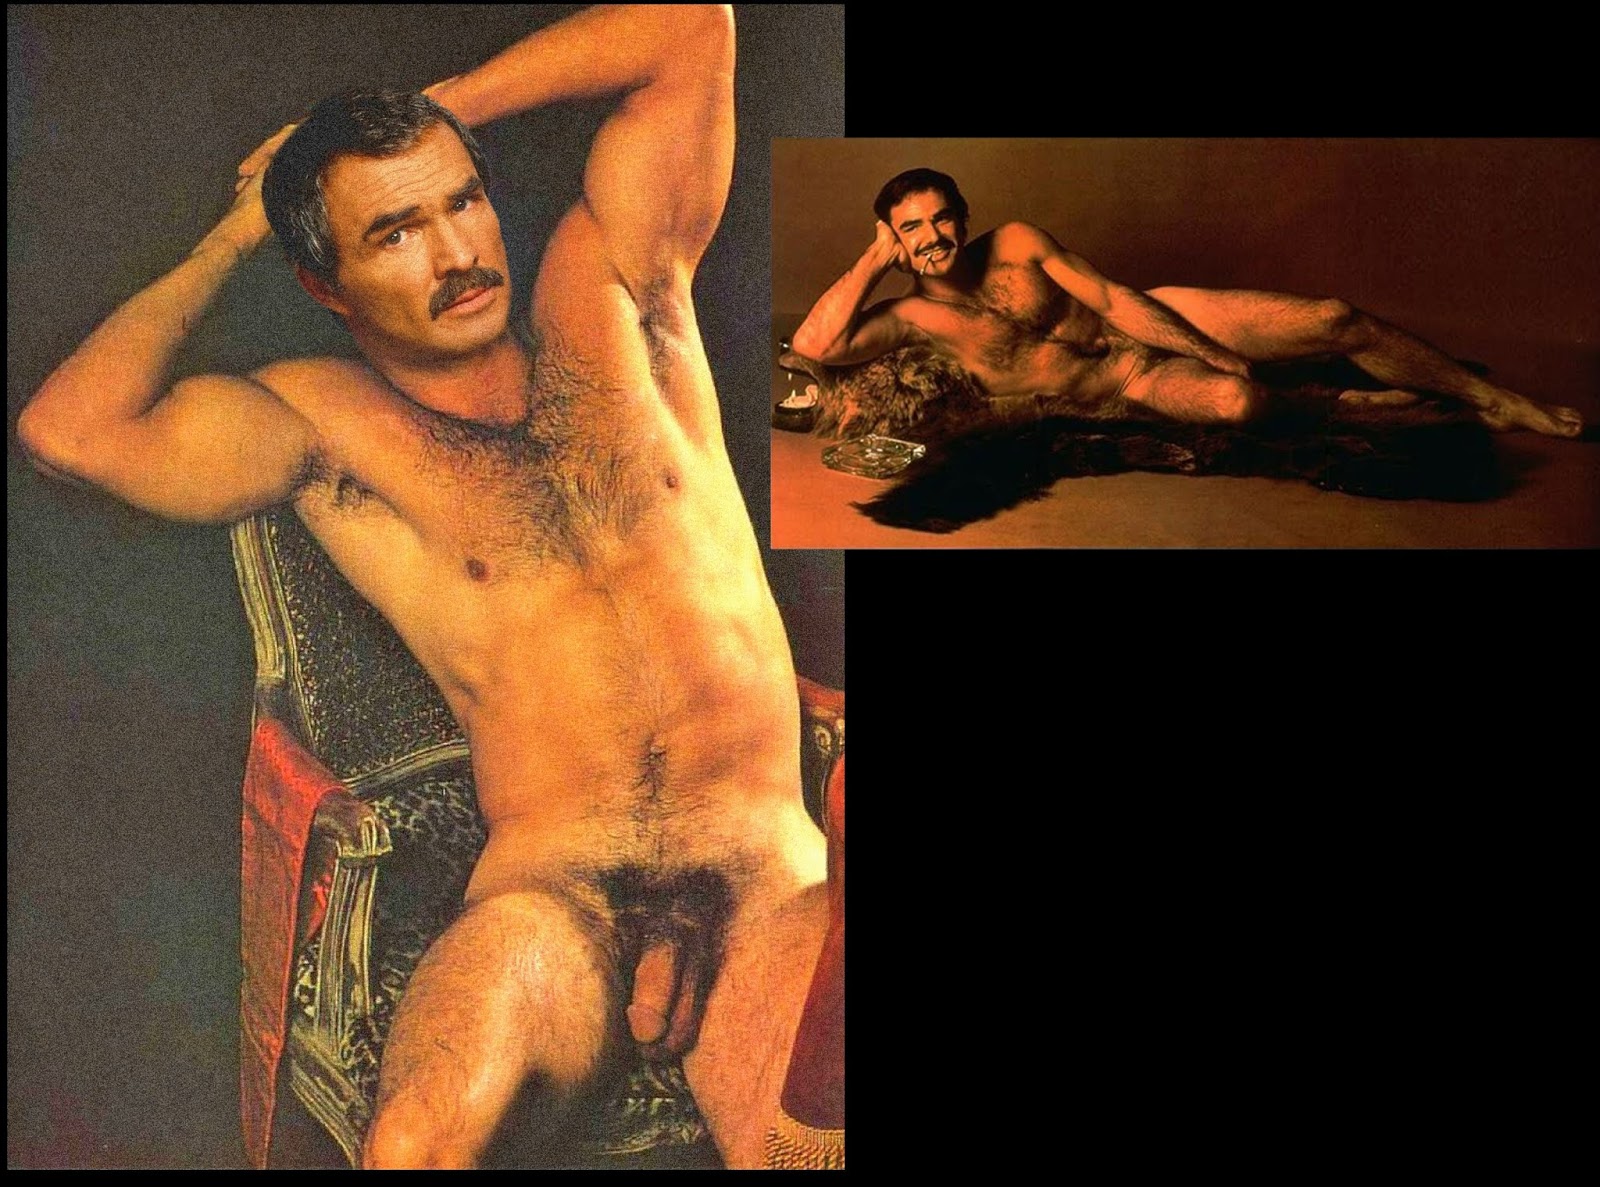 Boymaster Fake Nudes Burt Reynolds